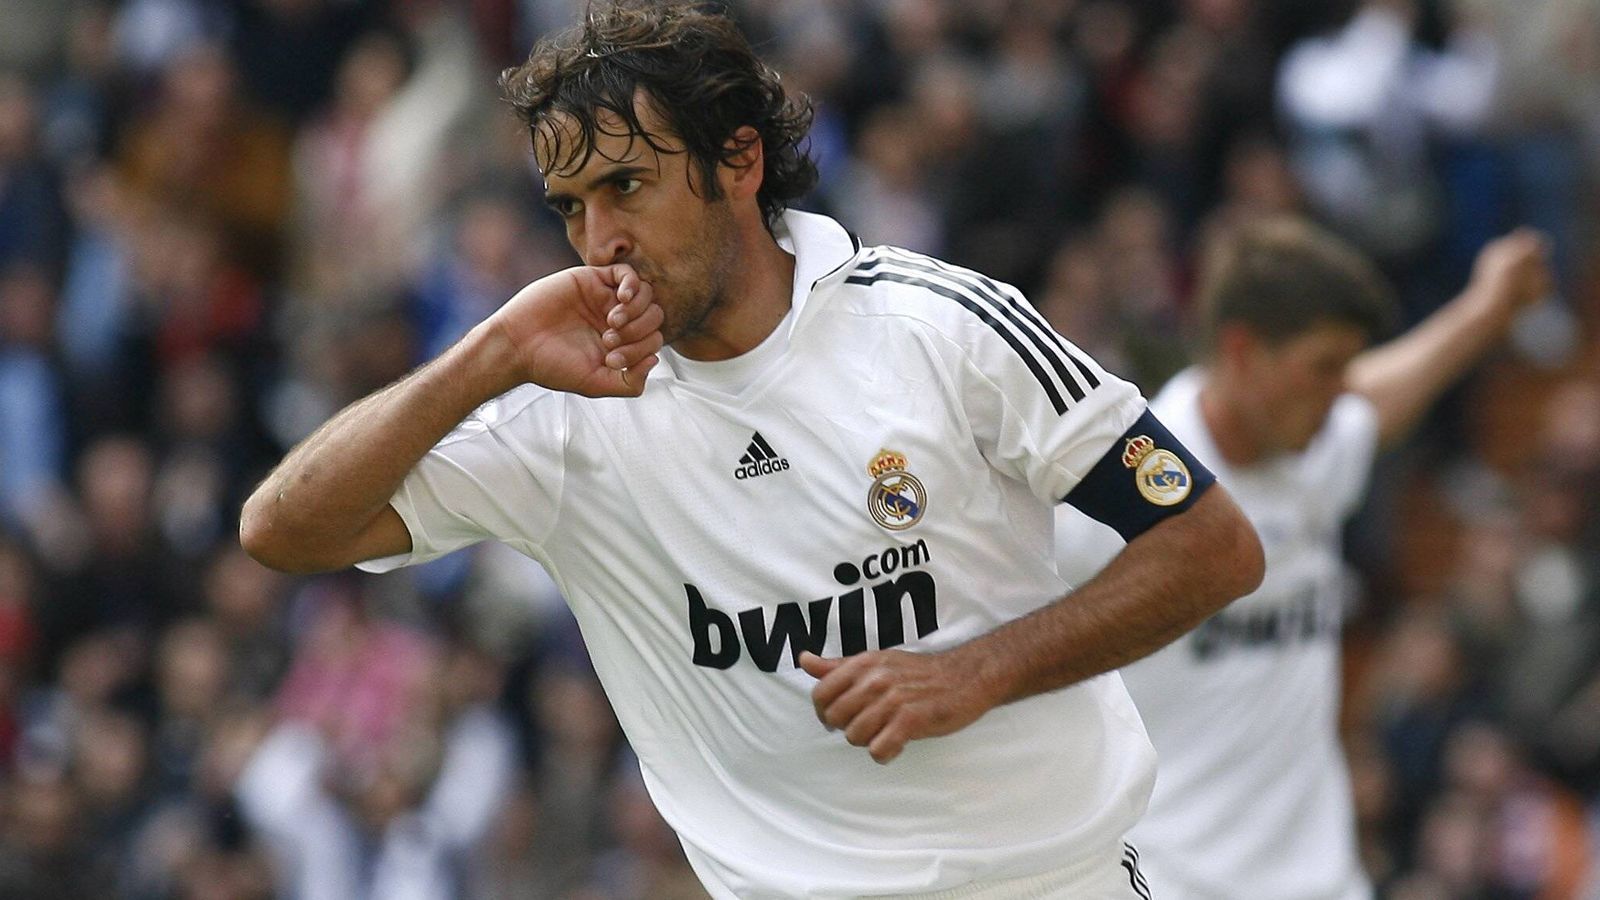 
                <strong>Raul</strong><br>
                Raul ist im Bernabeu eine Legende. Von 1994 bis 2010 spielte er bei Real, absolvierte 737 Spiele (322 Tore) und erlebte so ziemlich alles an Höhen und Tiefen, was man erleben kann. Sieben Jahre war er zudem Kapitän der "Los Blancos".
              